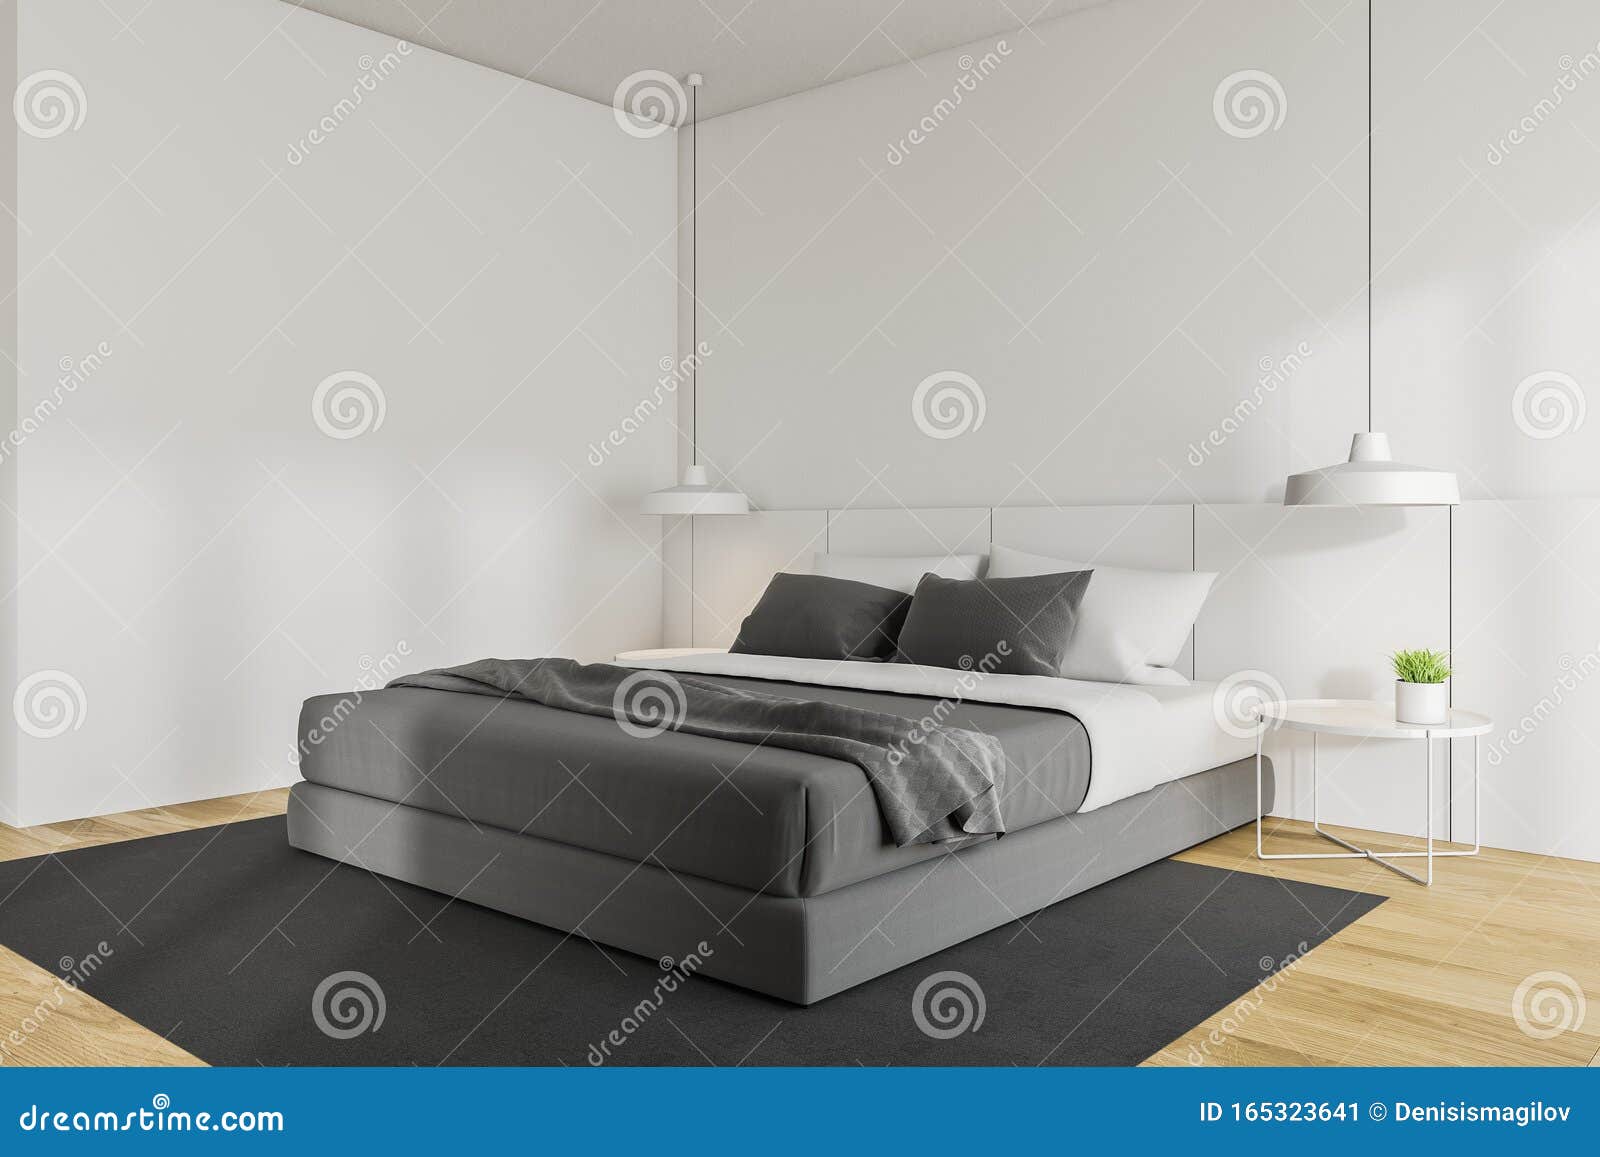 Esquina De Dormitorio Principal En Blanco Minimalista Stock De Ilustracion Ilustracion De Minimalista Principal 165323641